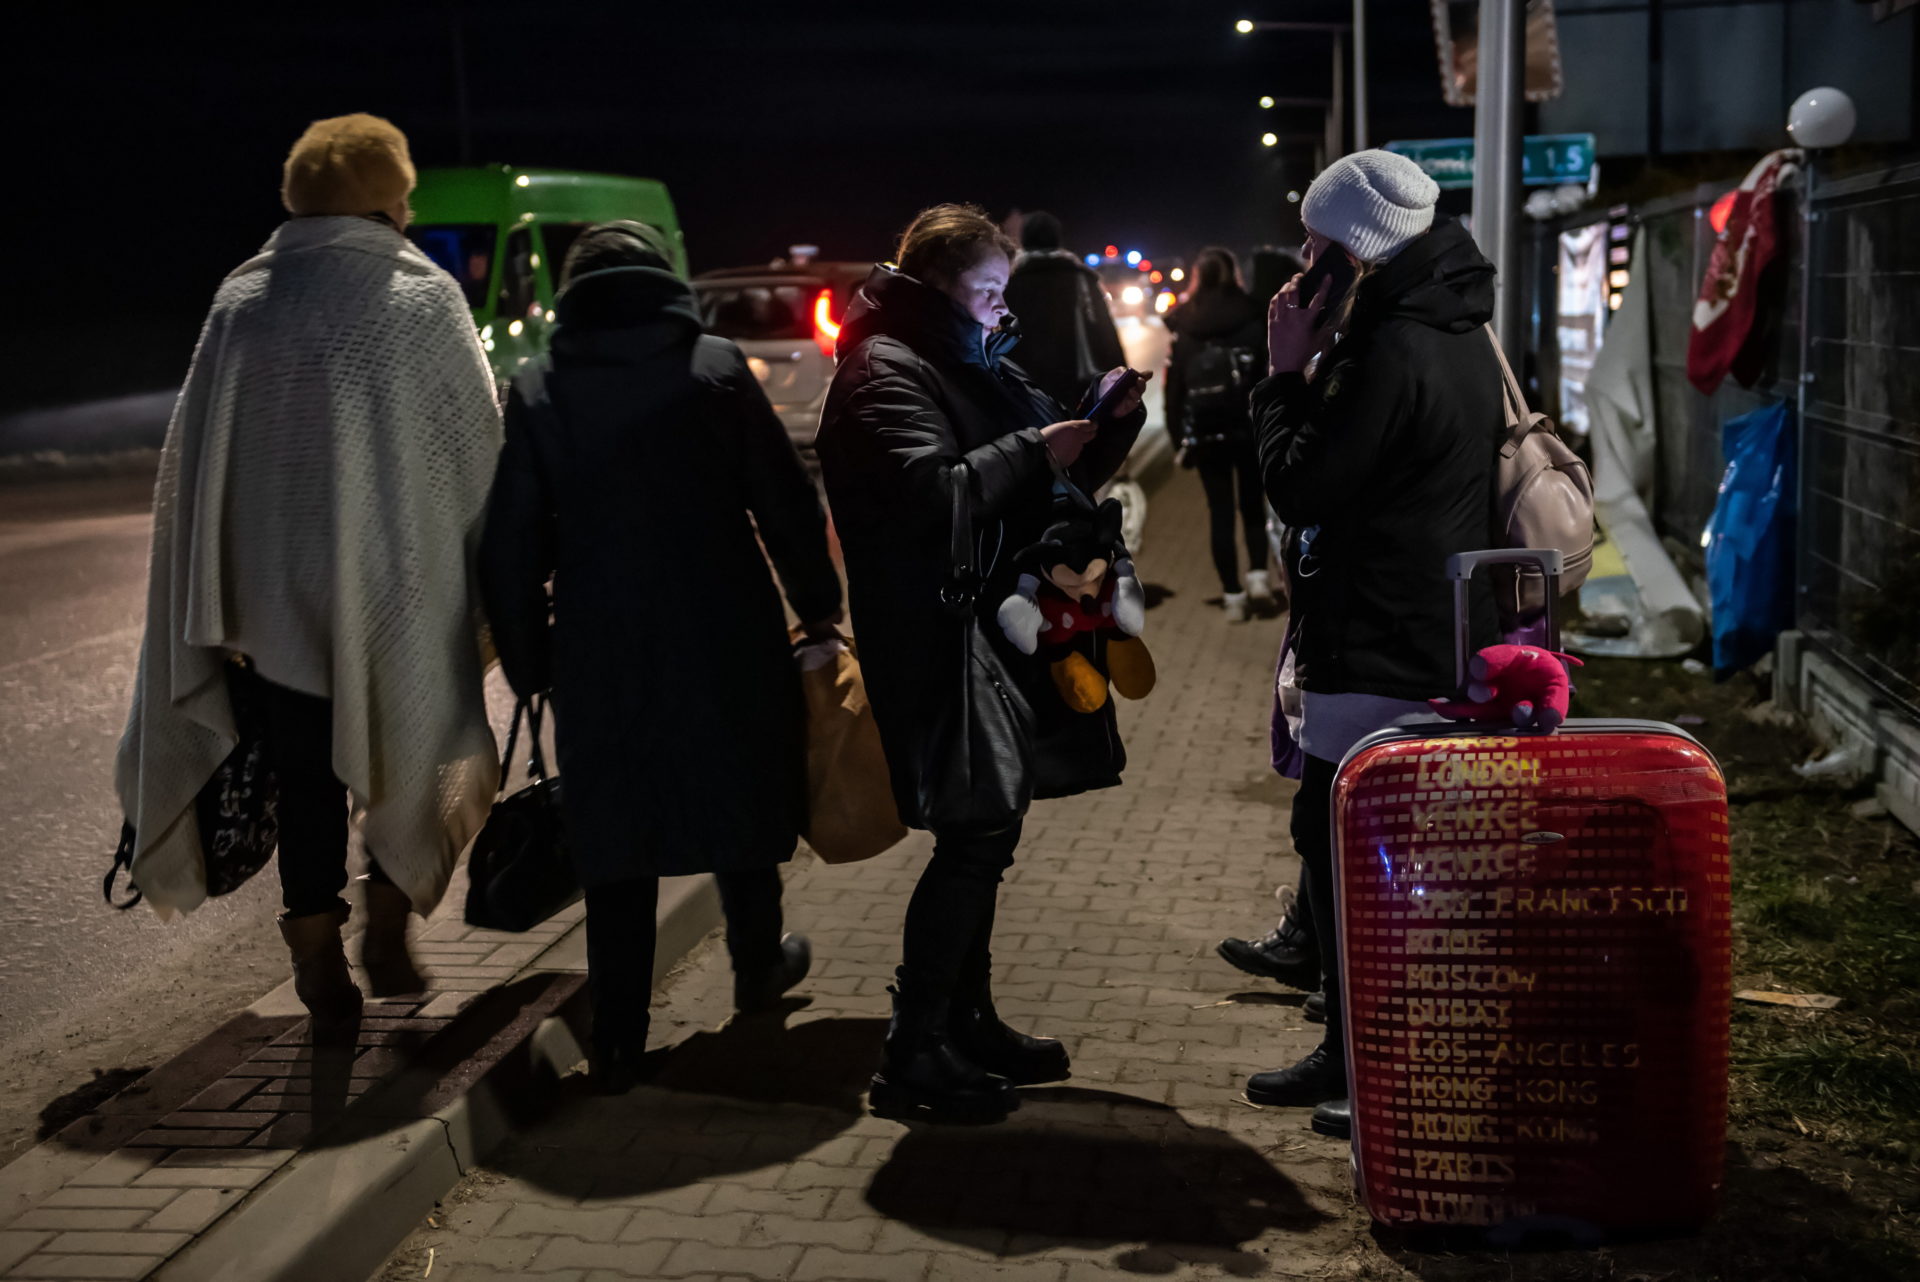 Polónia recebeu quase 9 milhões de refugiados ucranianos, mas a maioria regressou ao país